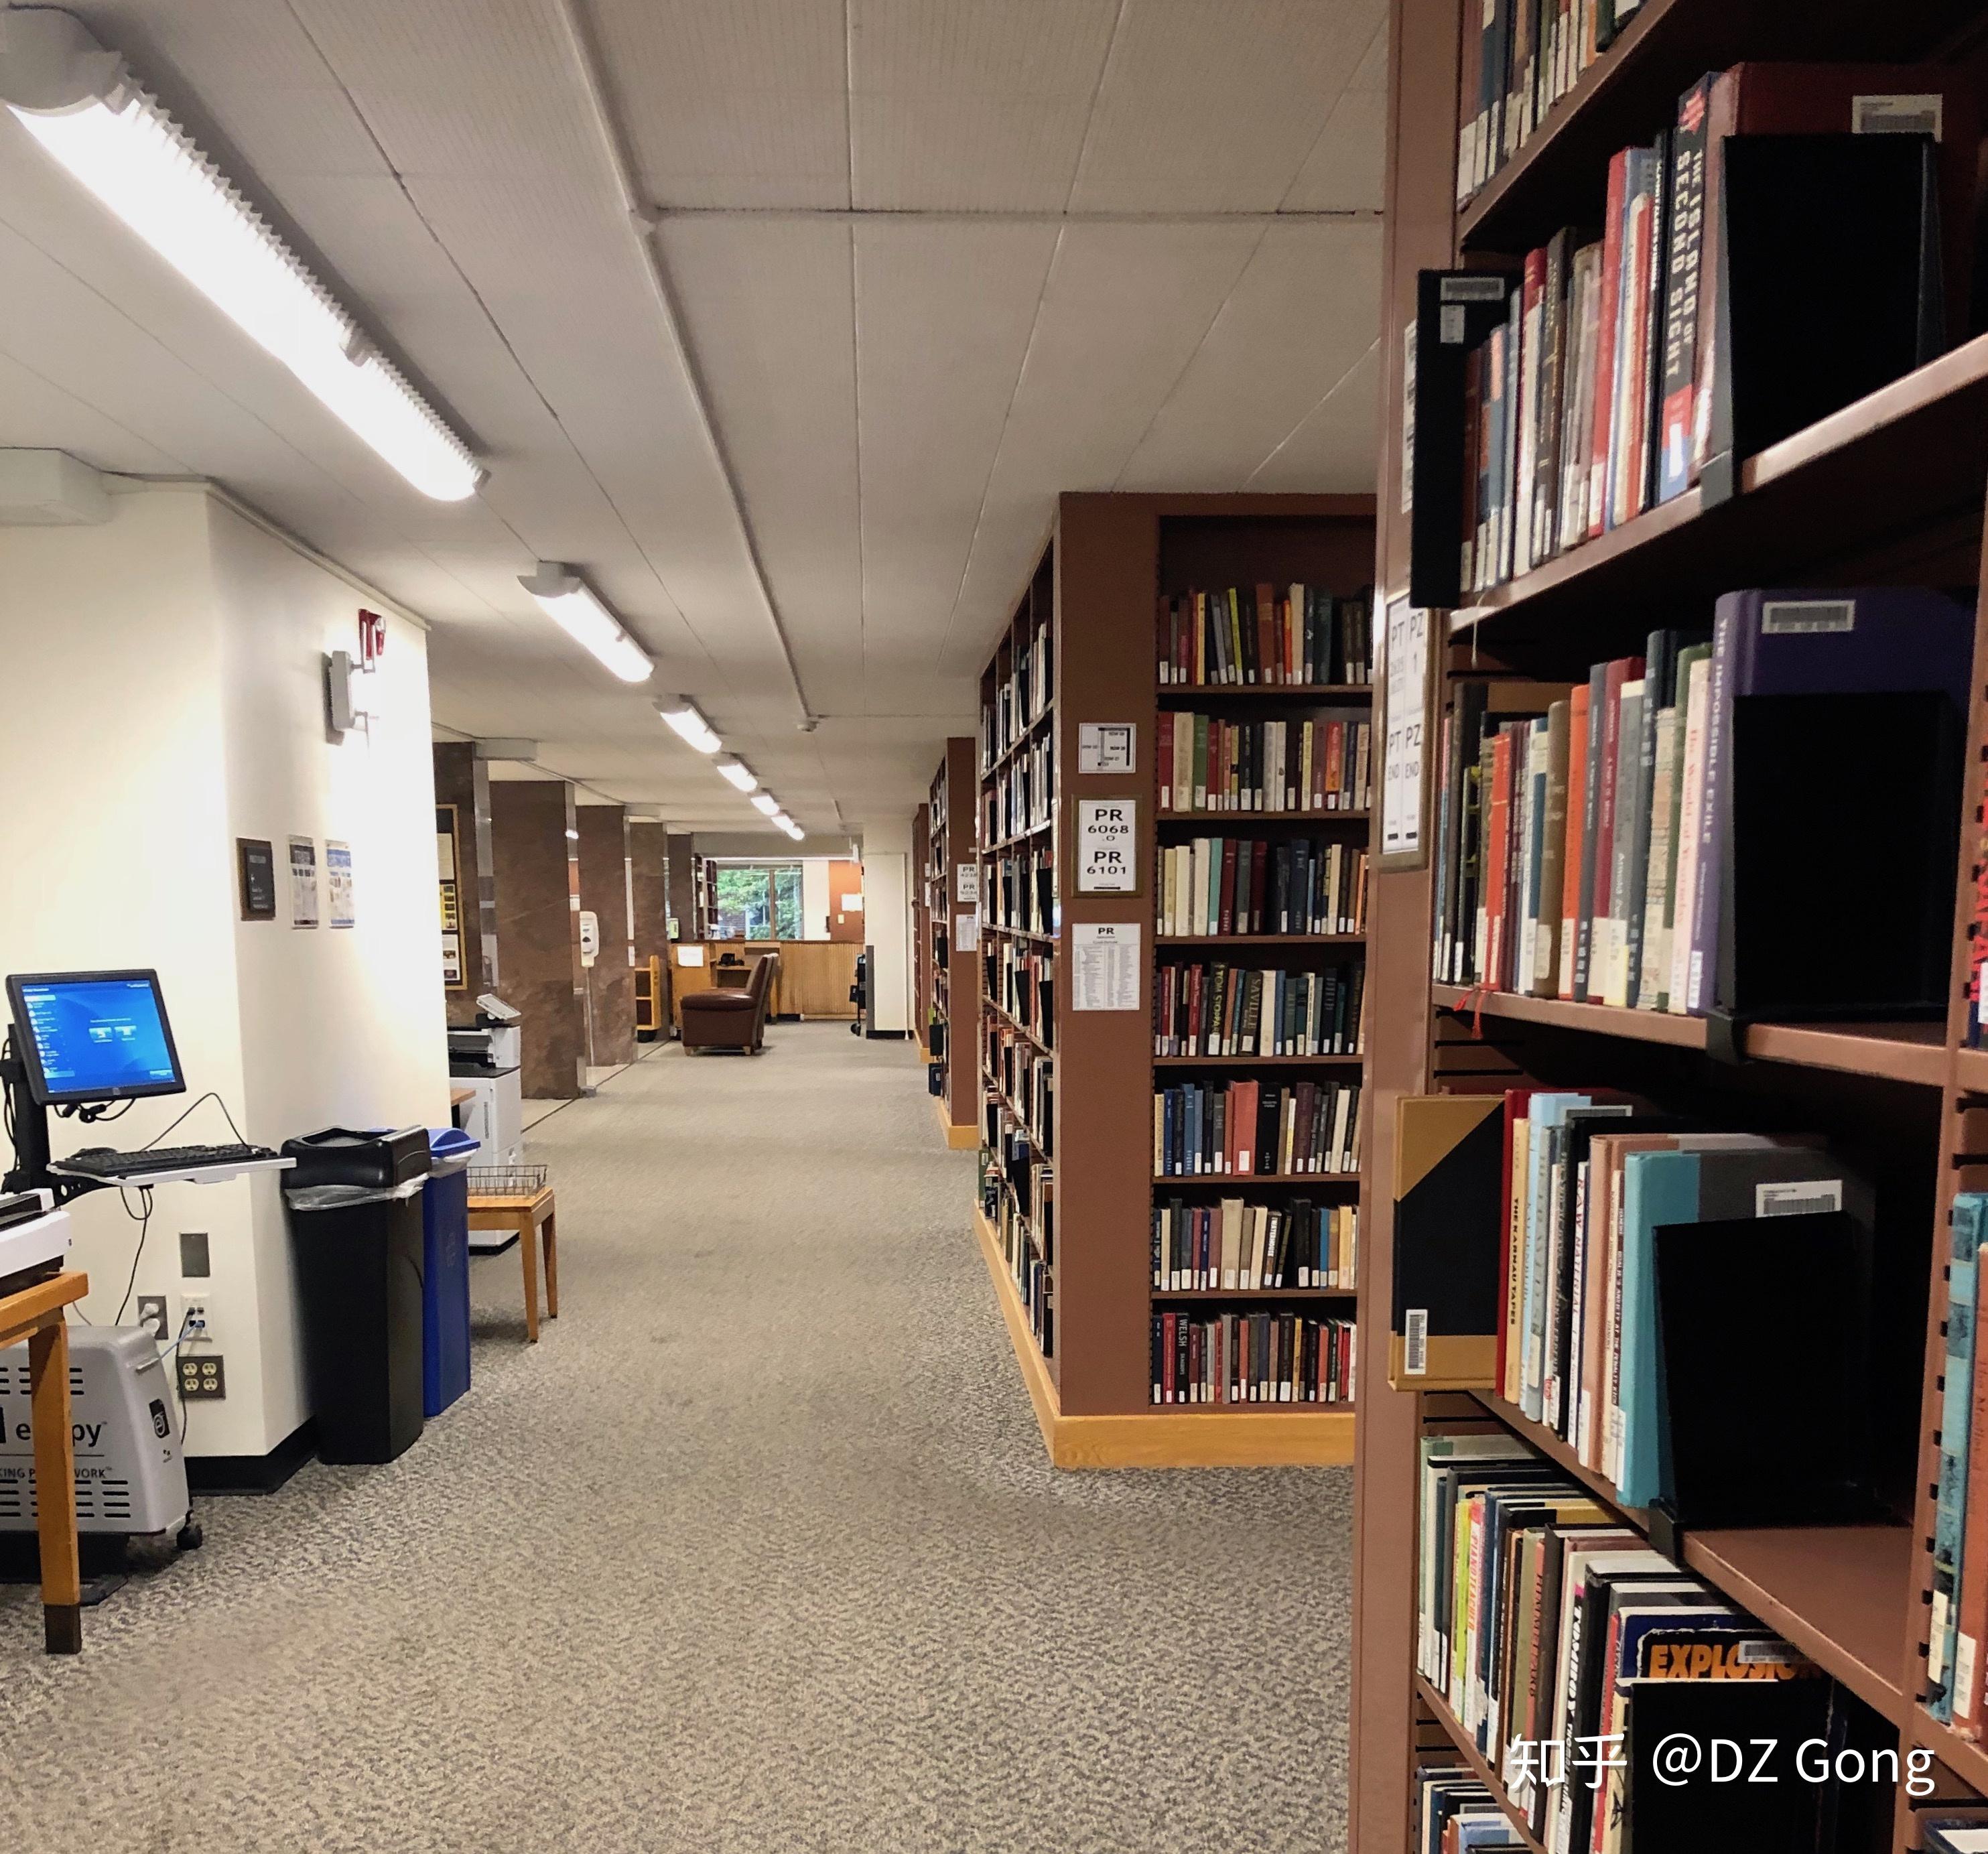 在哈佛大学的图书馆看书学习是种什么样的体验? 